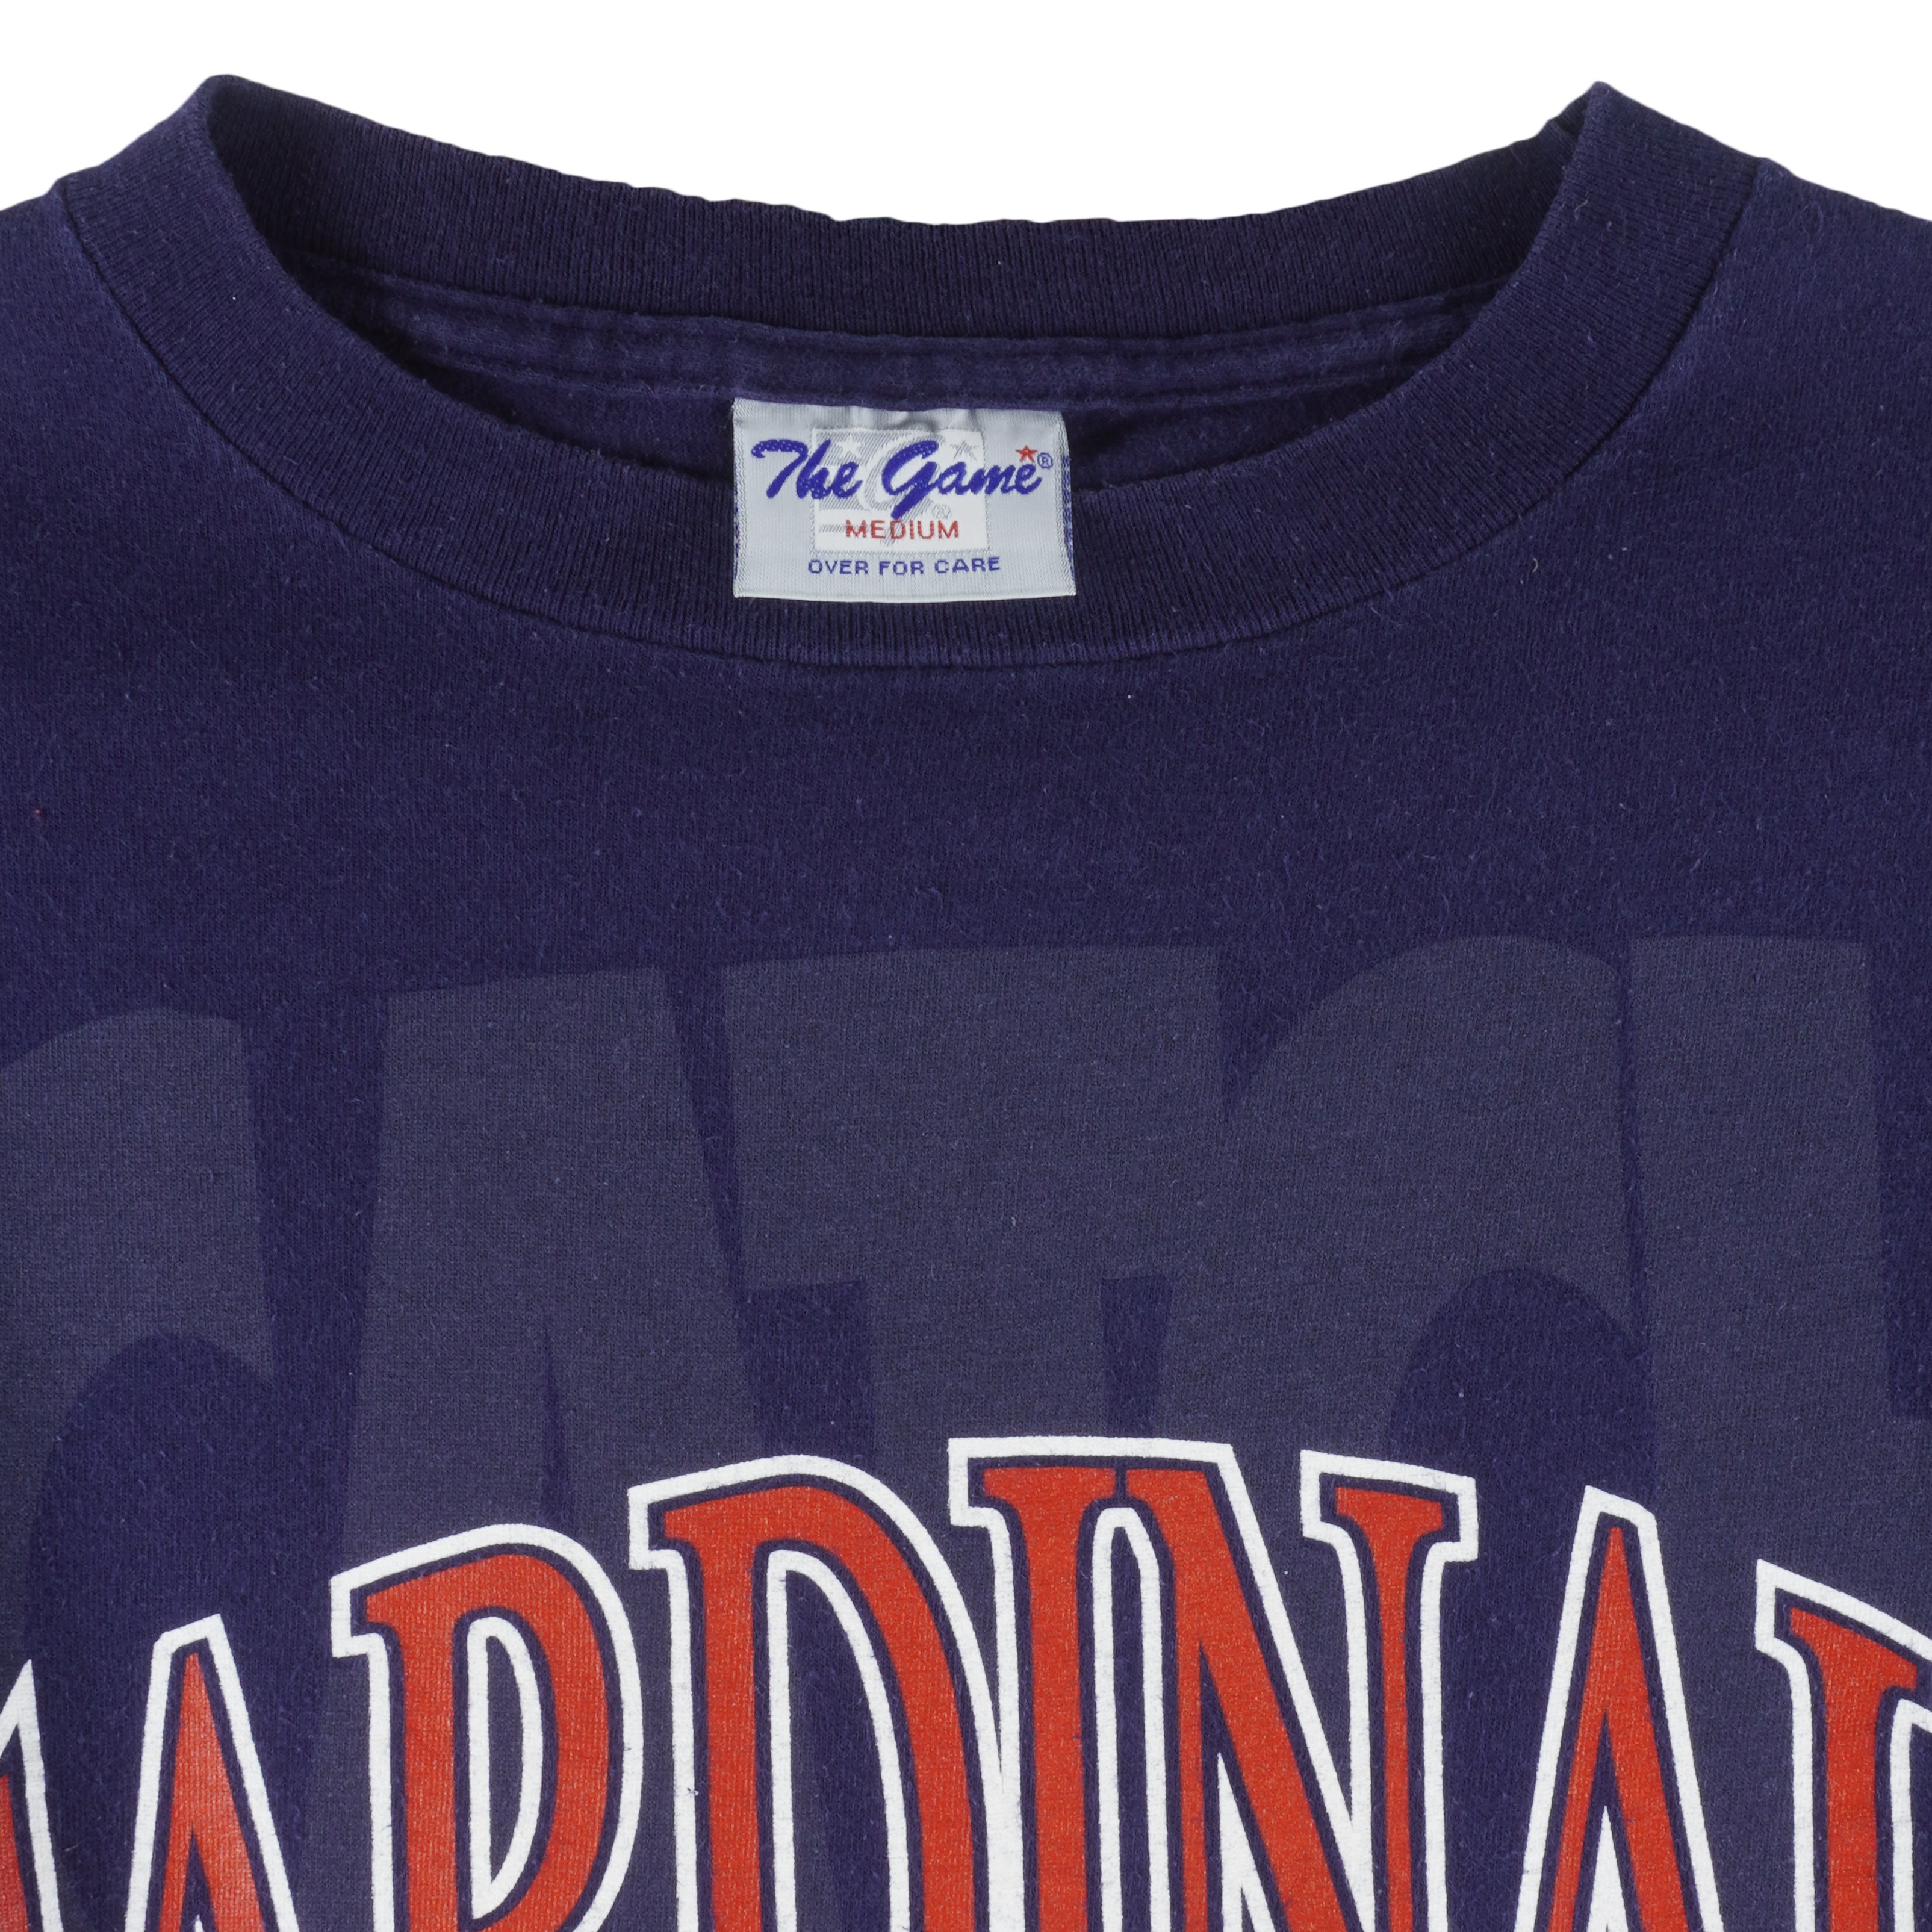 Vintage CHAMPION St. Louis Cardinals Single Stitch T Shirt Large